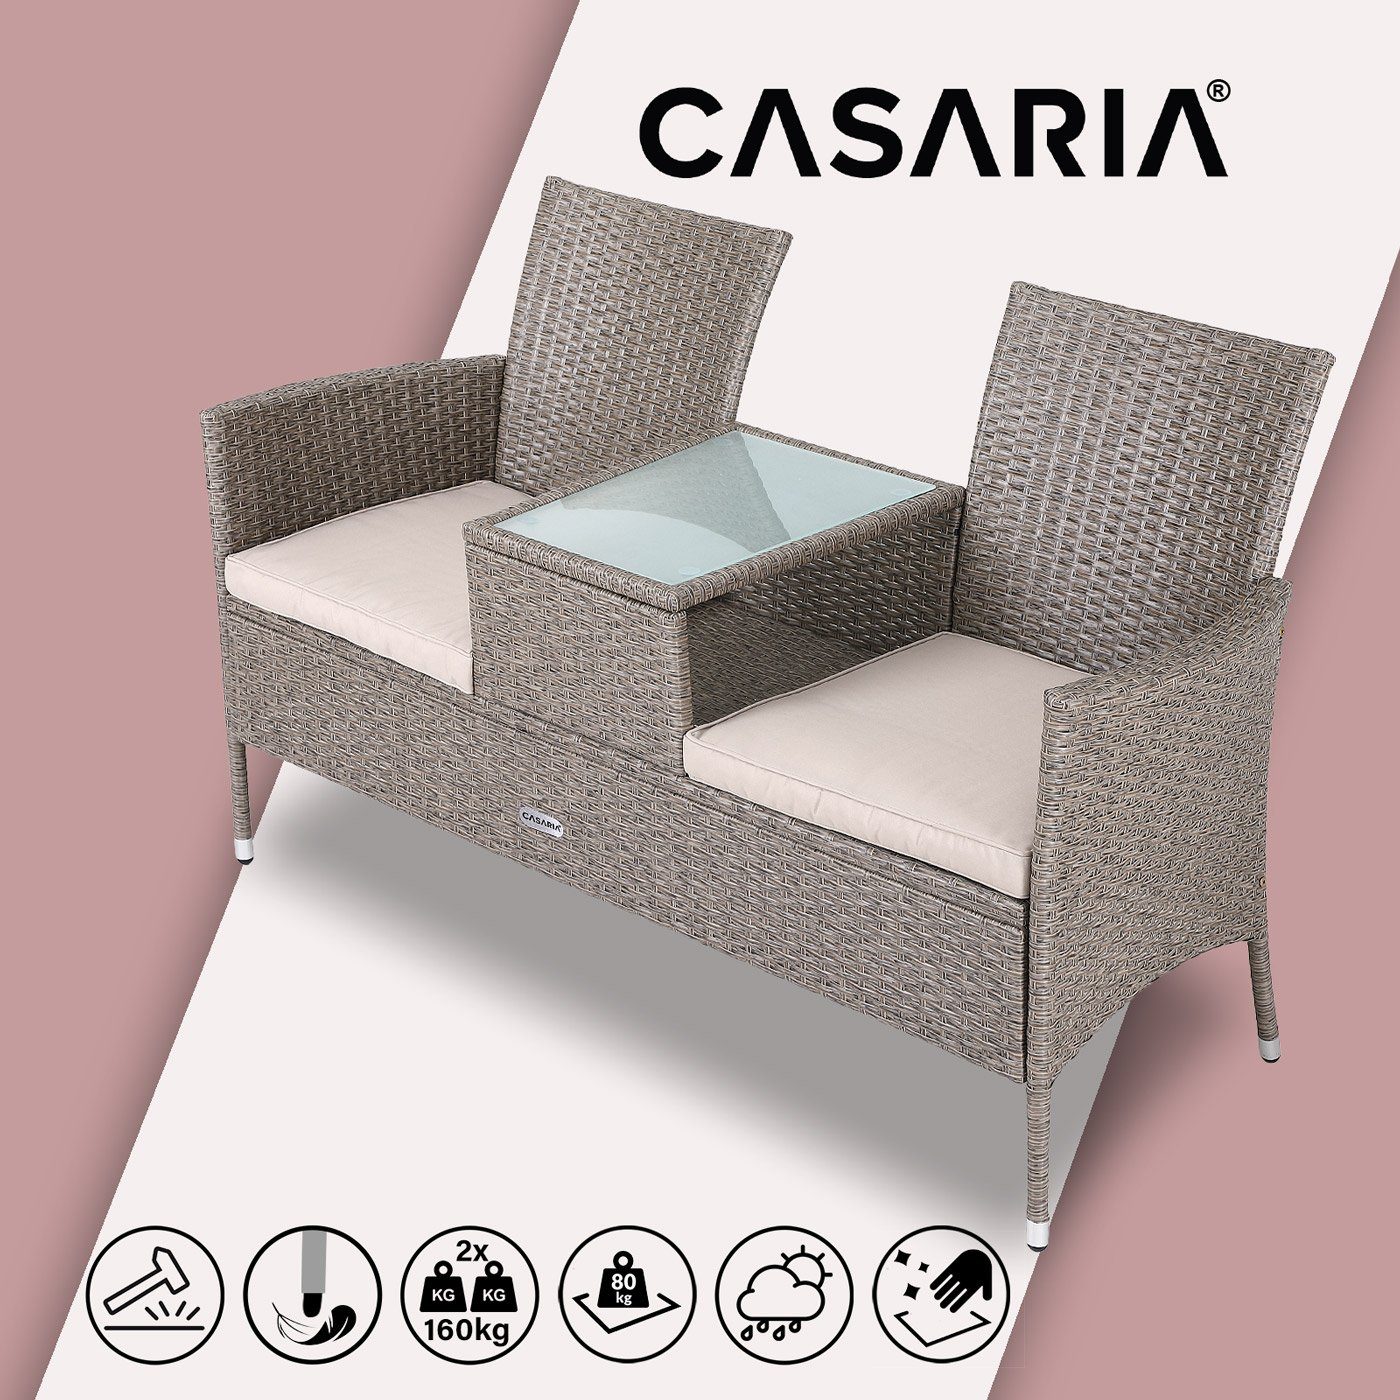 Casaria Gartenbank, Creme Tisch inkl. Auflagen 320kg 143x55x88cm Polyrattan Wetterfest